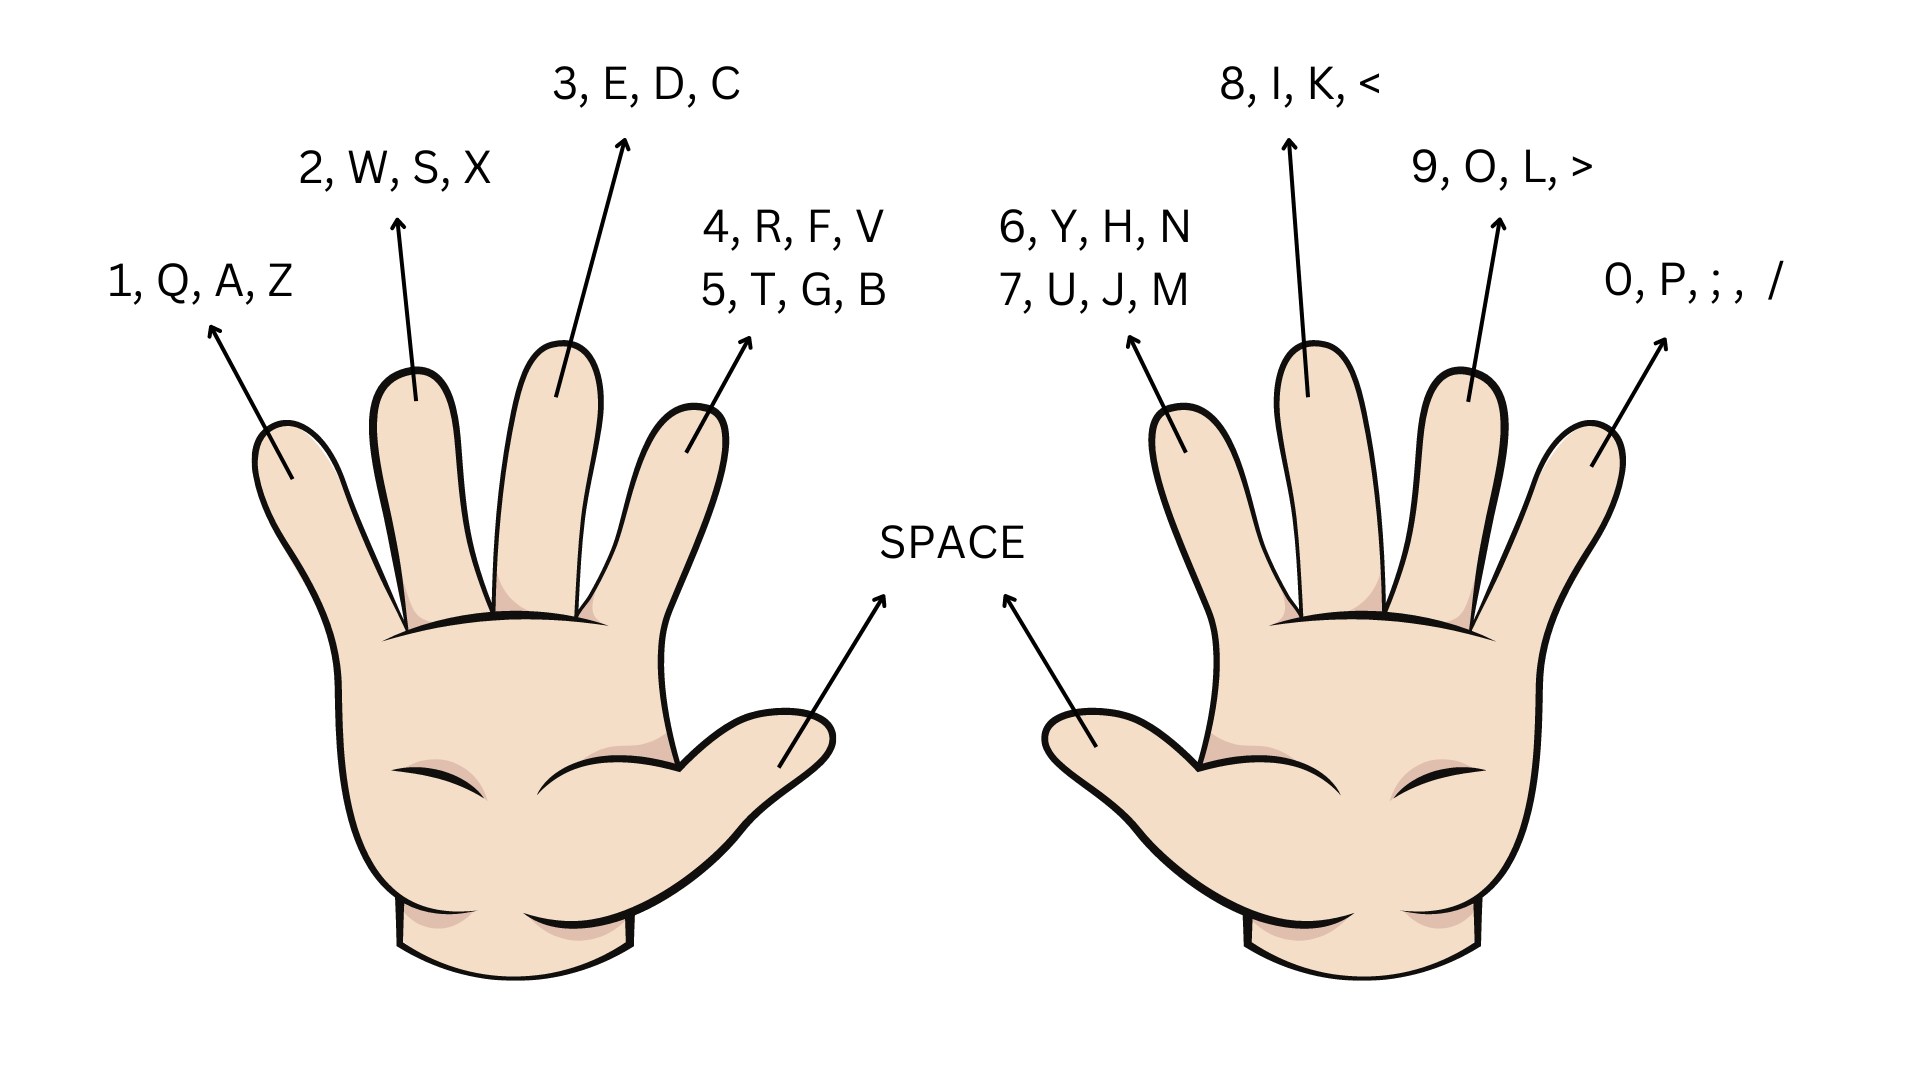 Chart of keys for each finger